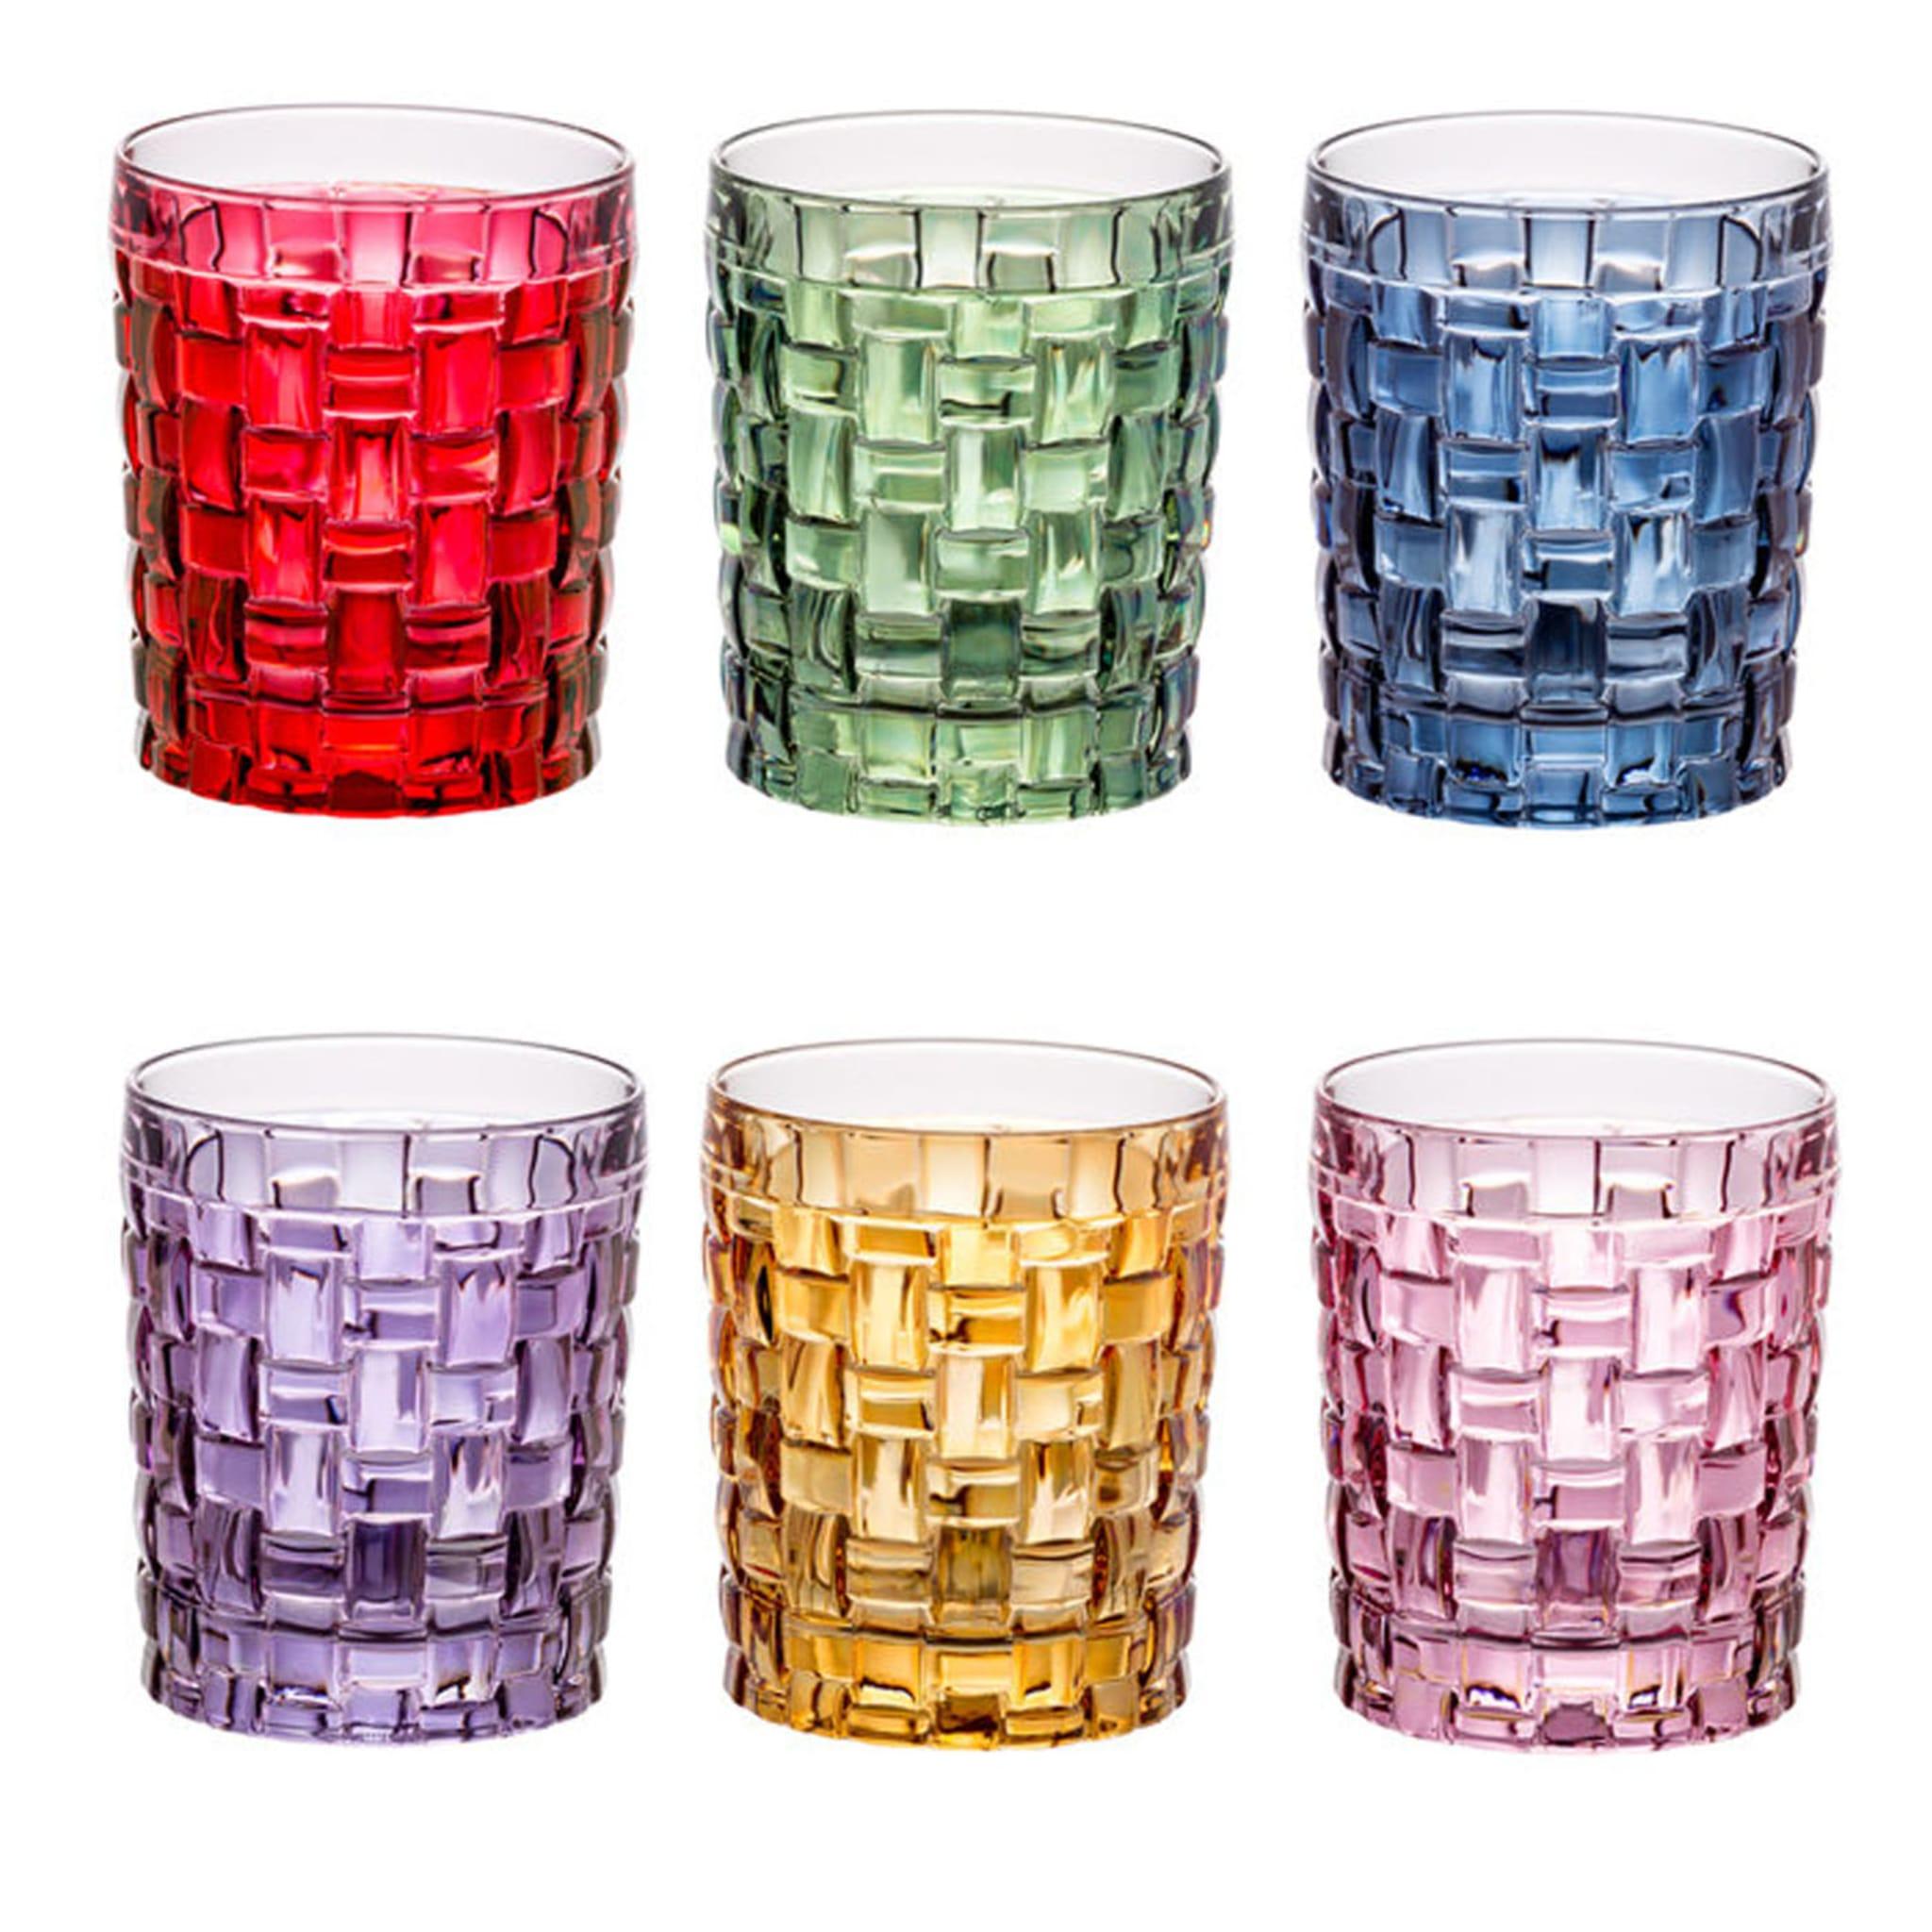 Un savoir-faire exquis, une texture saisissante et des combinaisons de couleurs uniques sont les qualités séduisantes de ce set de six verres à eau de la Collection Manhattan. La silhouette linéaire des pièces en verre est décorée à la main d'une